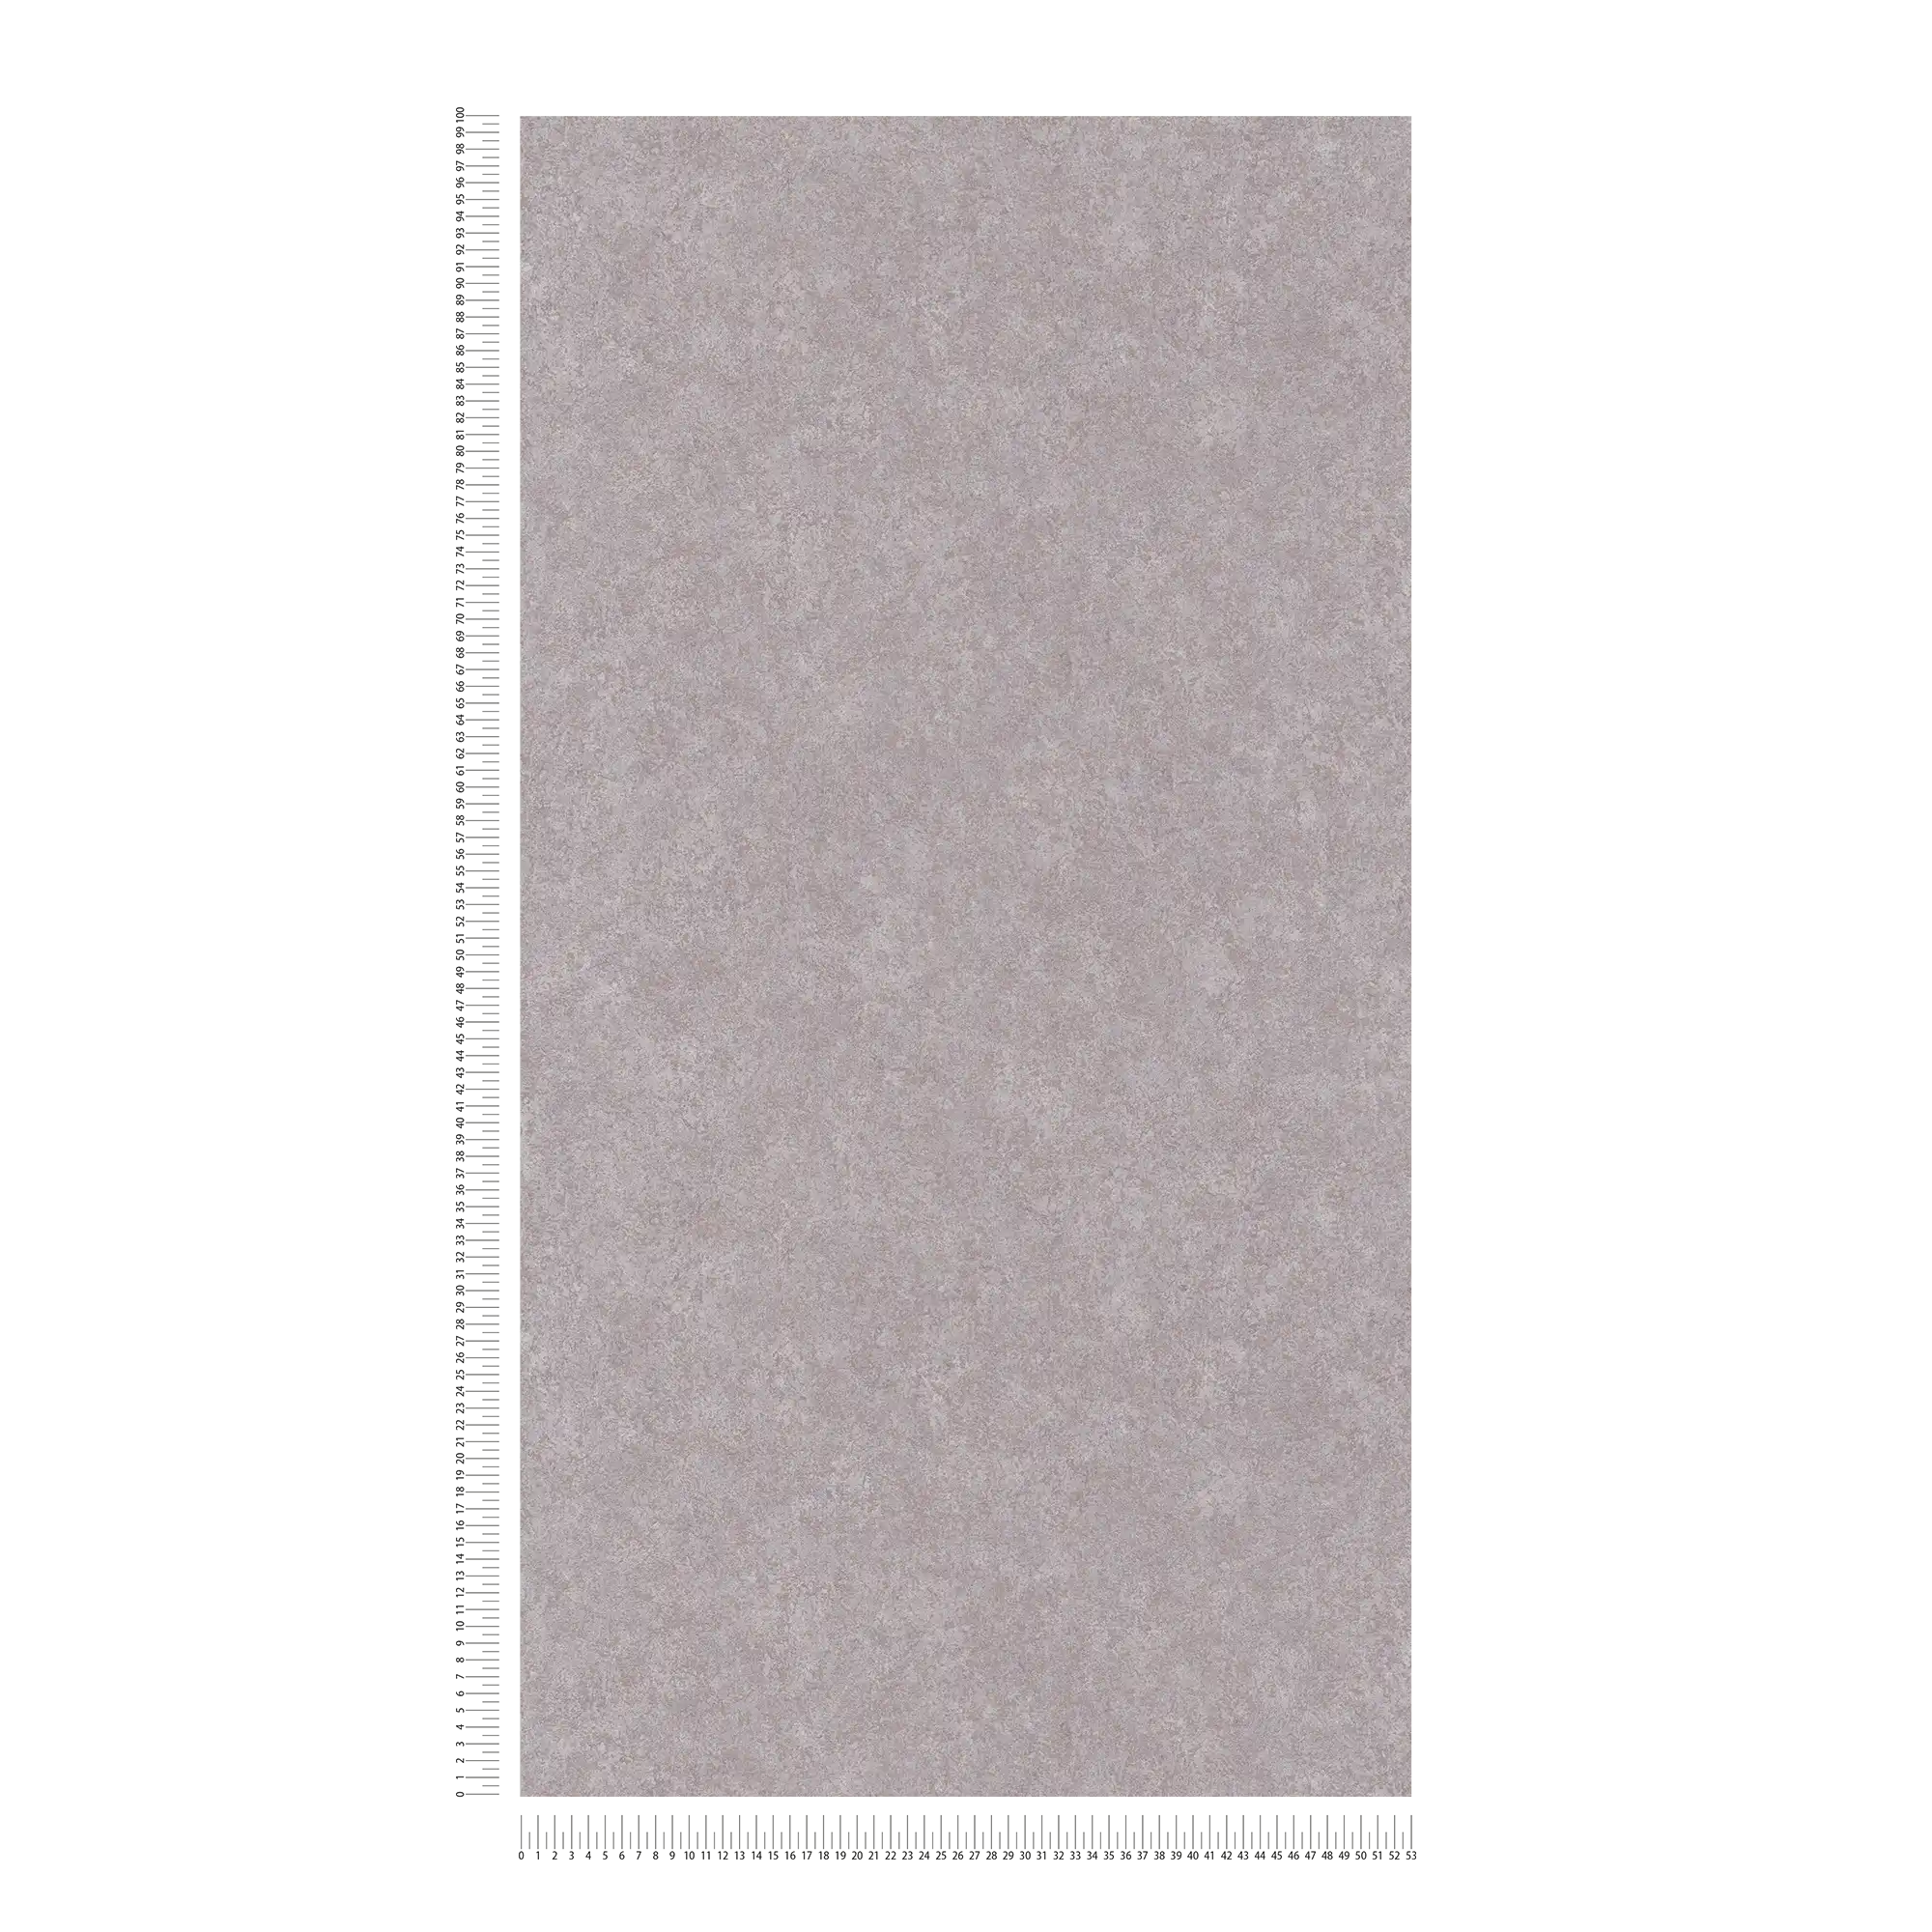             Papel pintado neutro de aspecto de yeso con superficie mate - gris
        